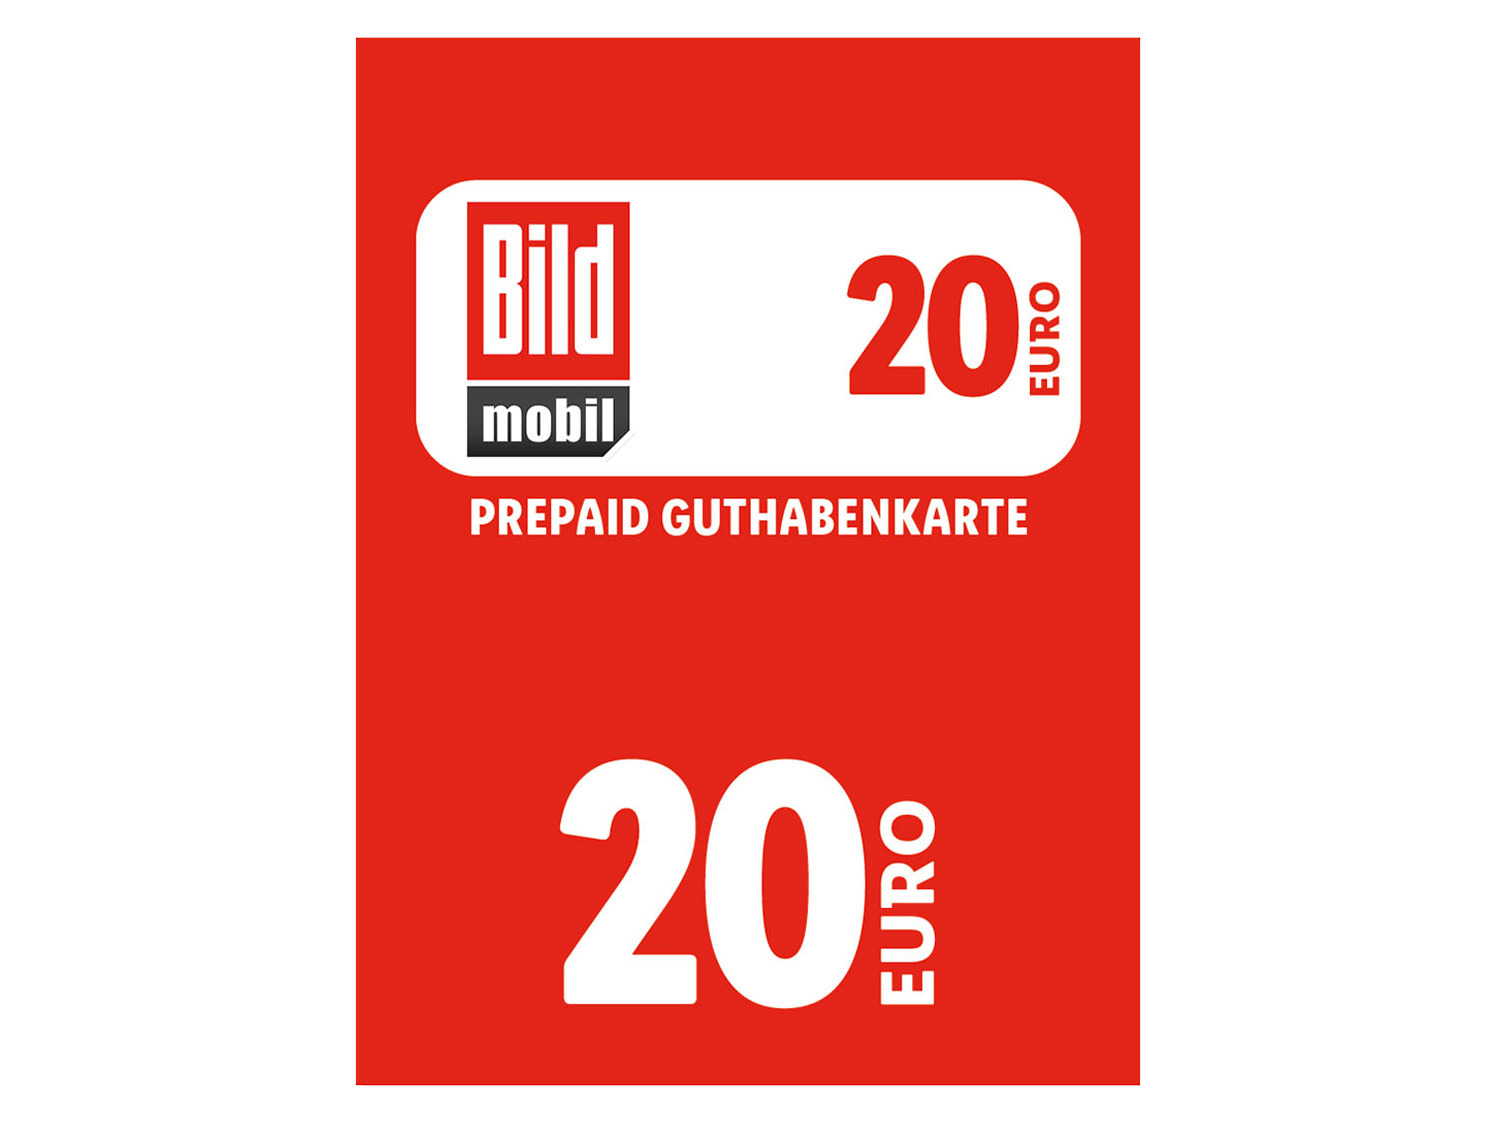 BILDmobil Code über 20 € online kaufen | LIDL | Prepaid Guthaben